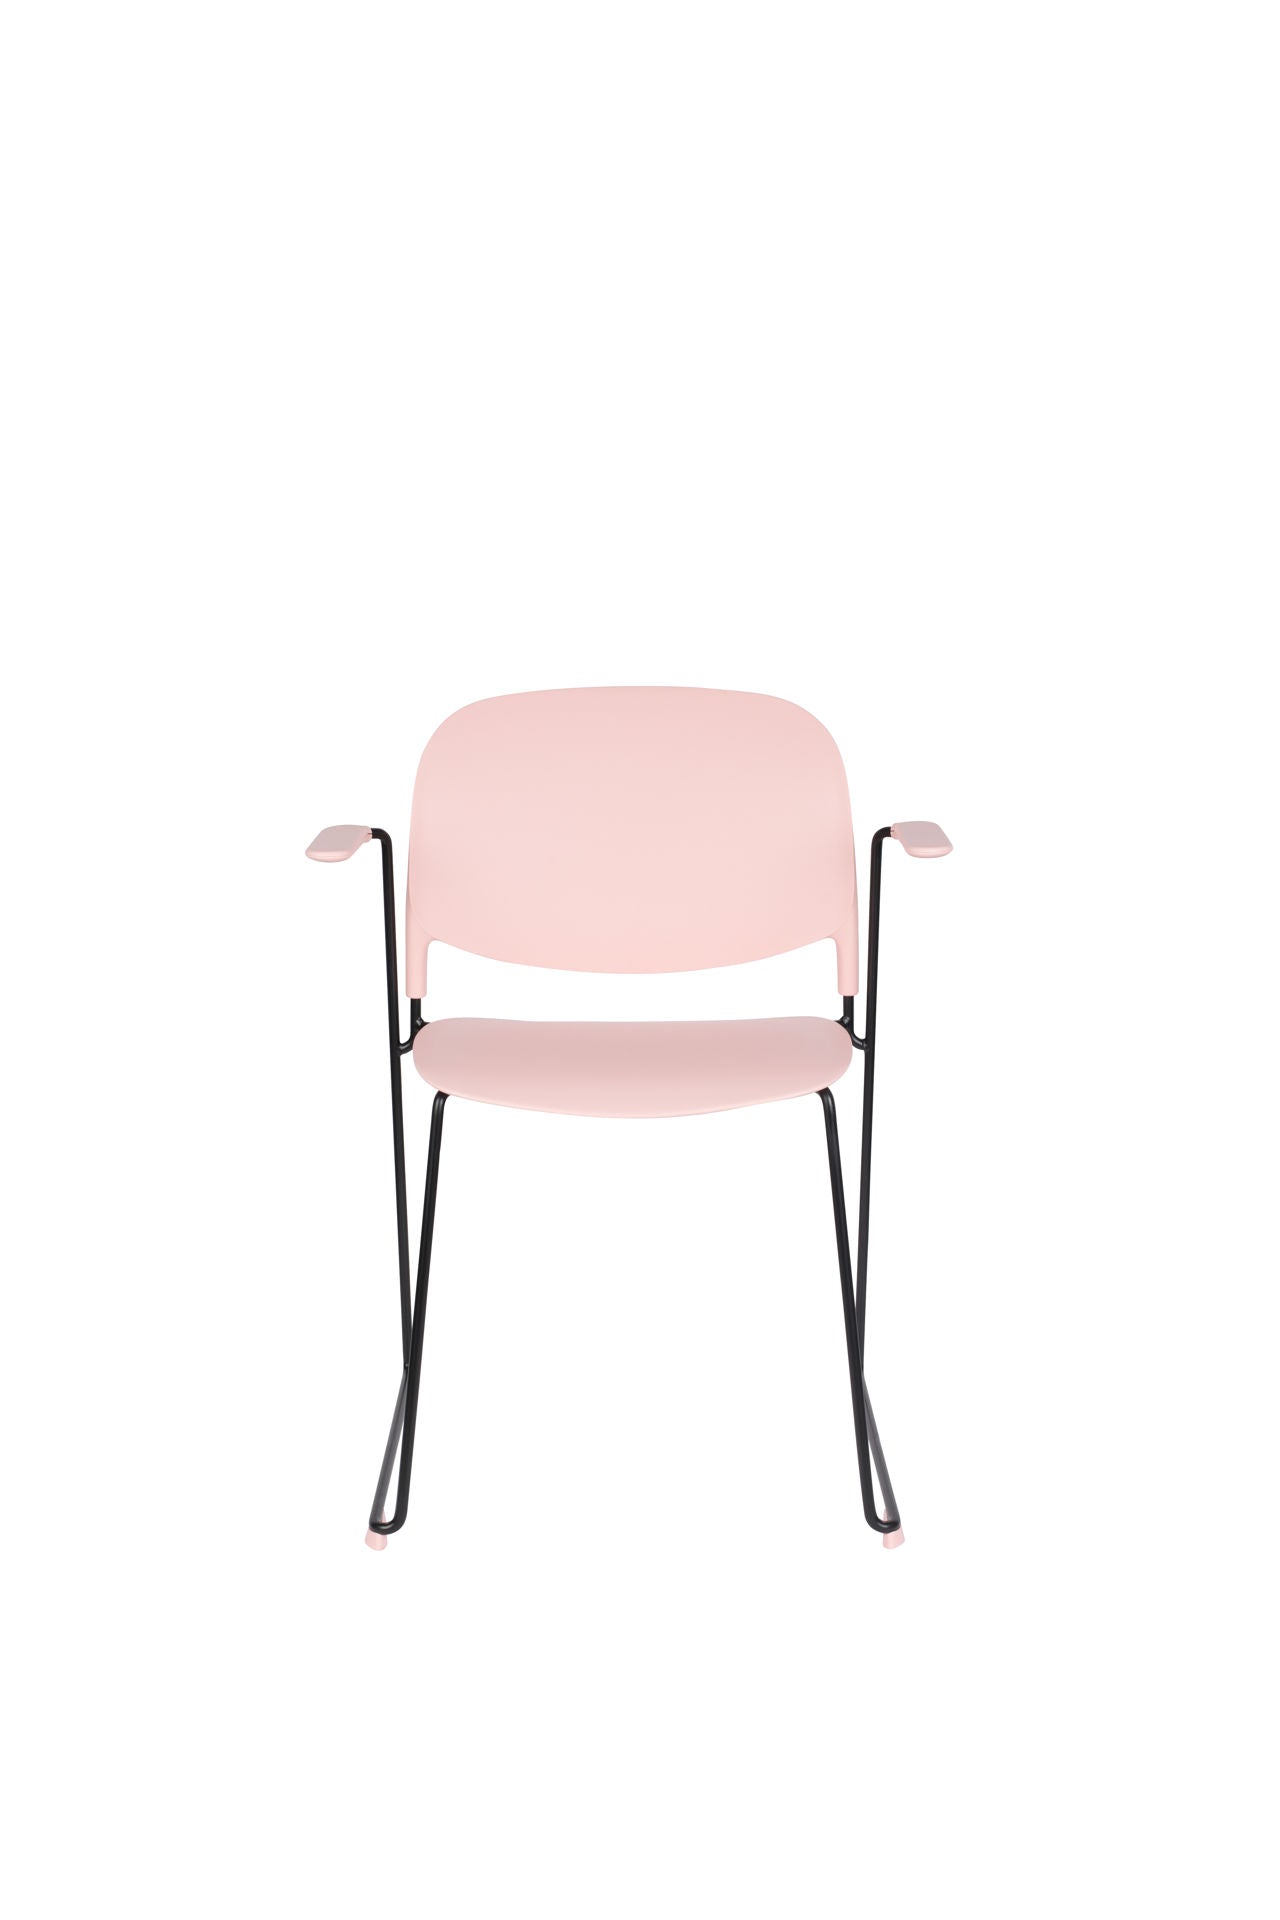 Nancy's Terrace Heights Chair - Rétro - Rose, Noir - Polypropylène, Acier, Plastique - 53 cm x 63,5 cm x 80,5 cm